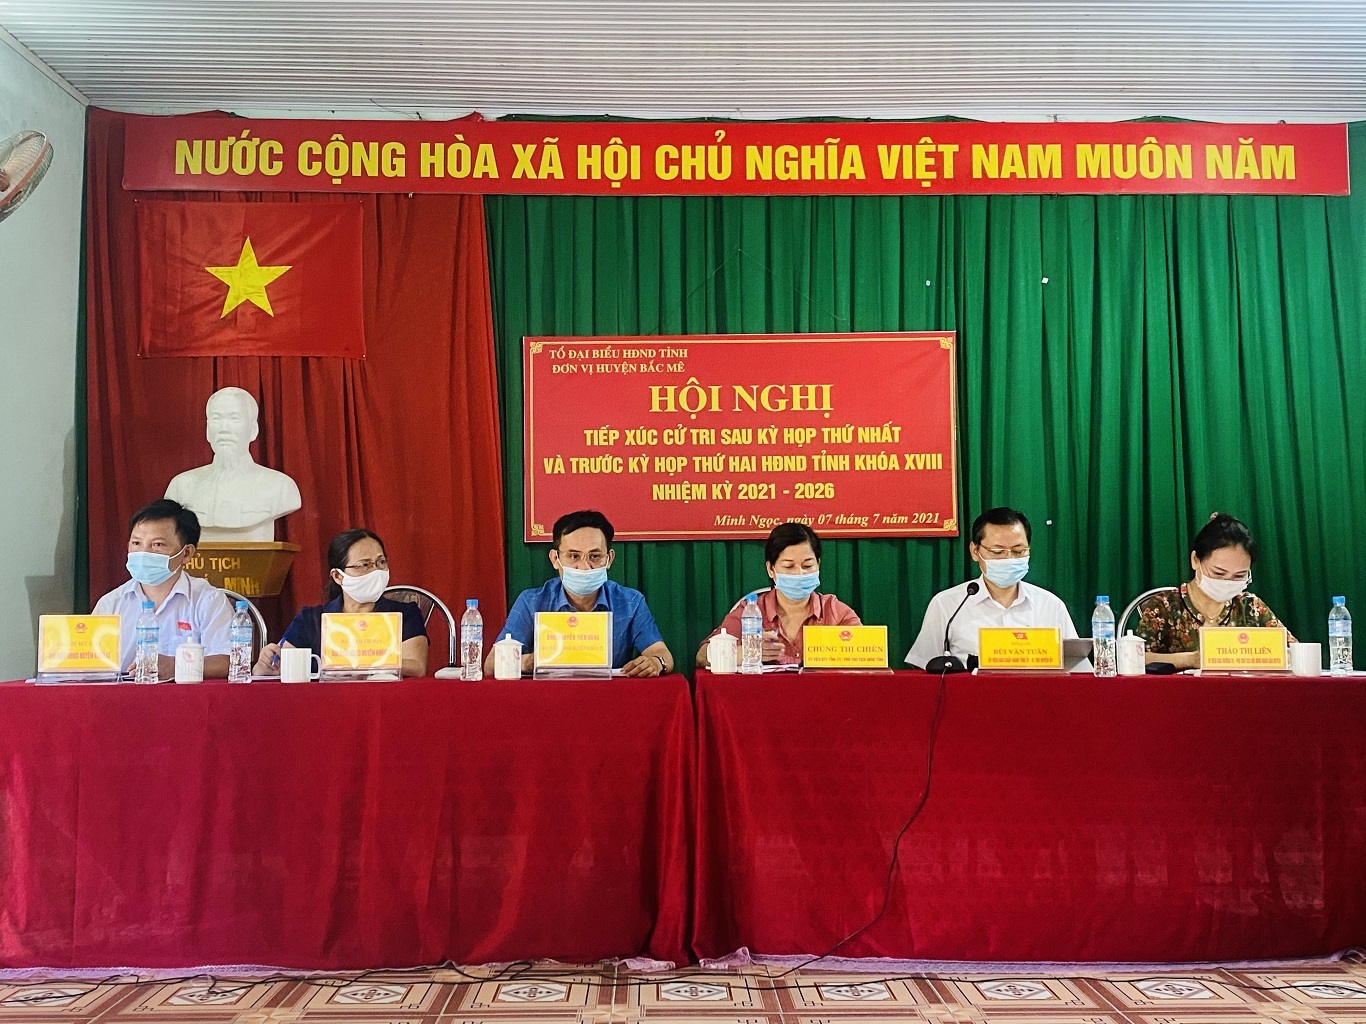 Tổ đại biểu HĐND tỉnh đơn vị huyện Bắc Mê tiếp xúc cử tri tại xã Minh Ngọc